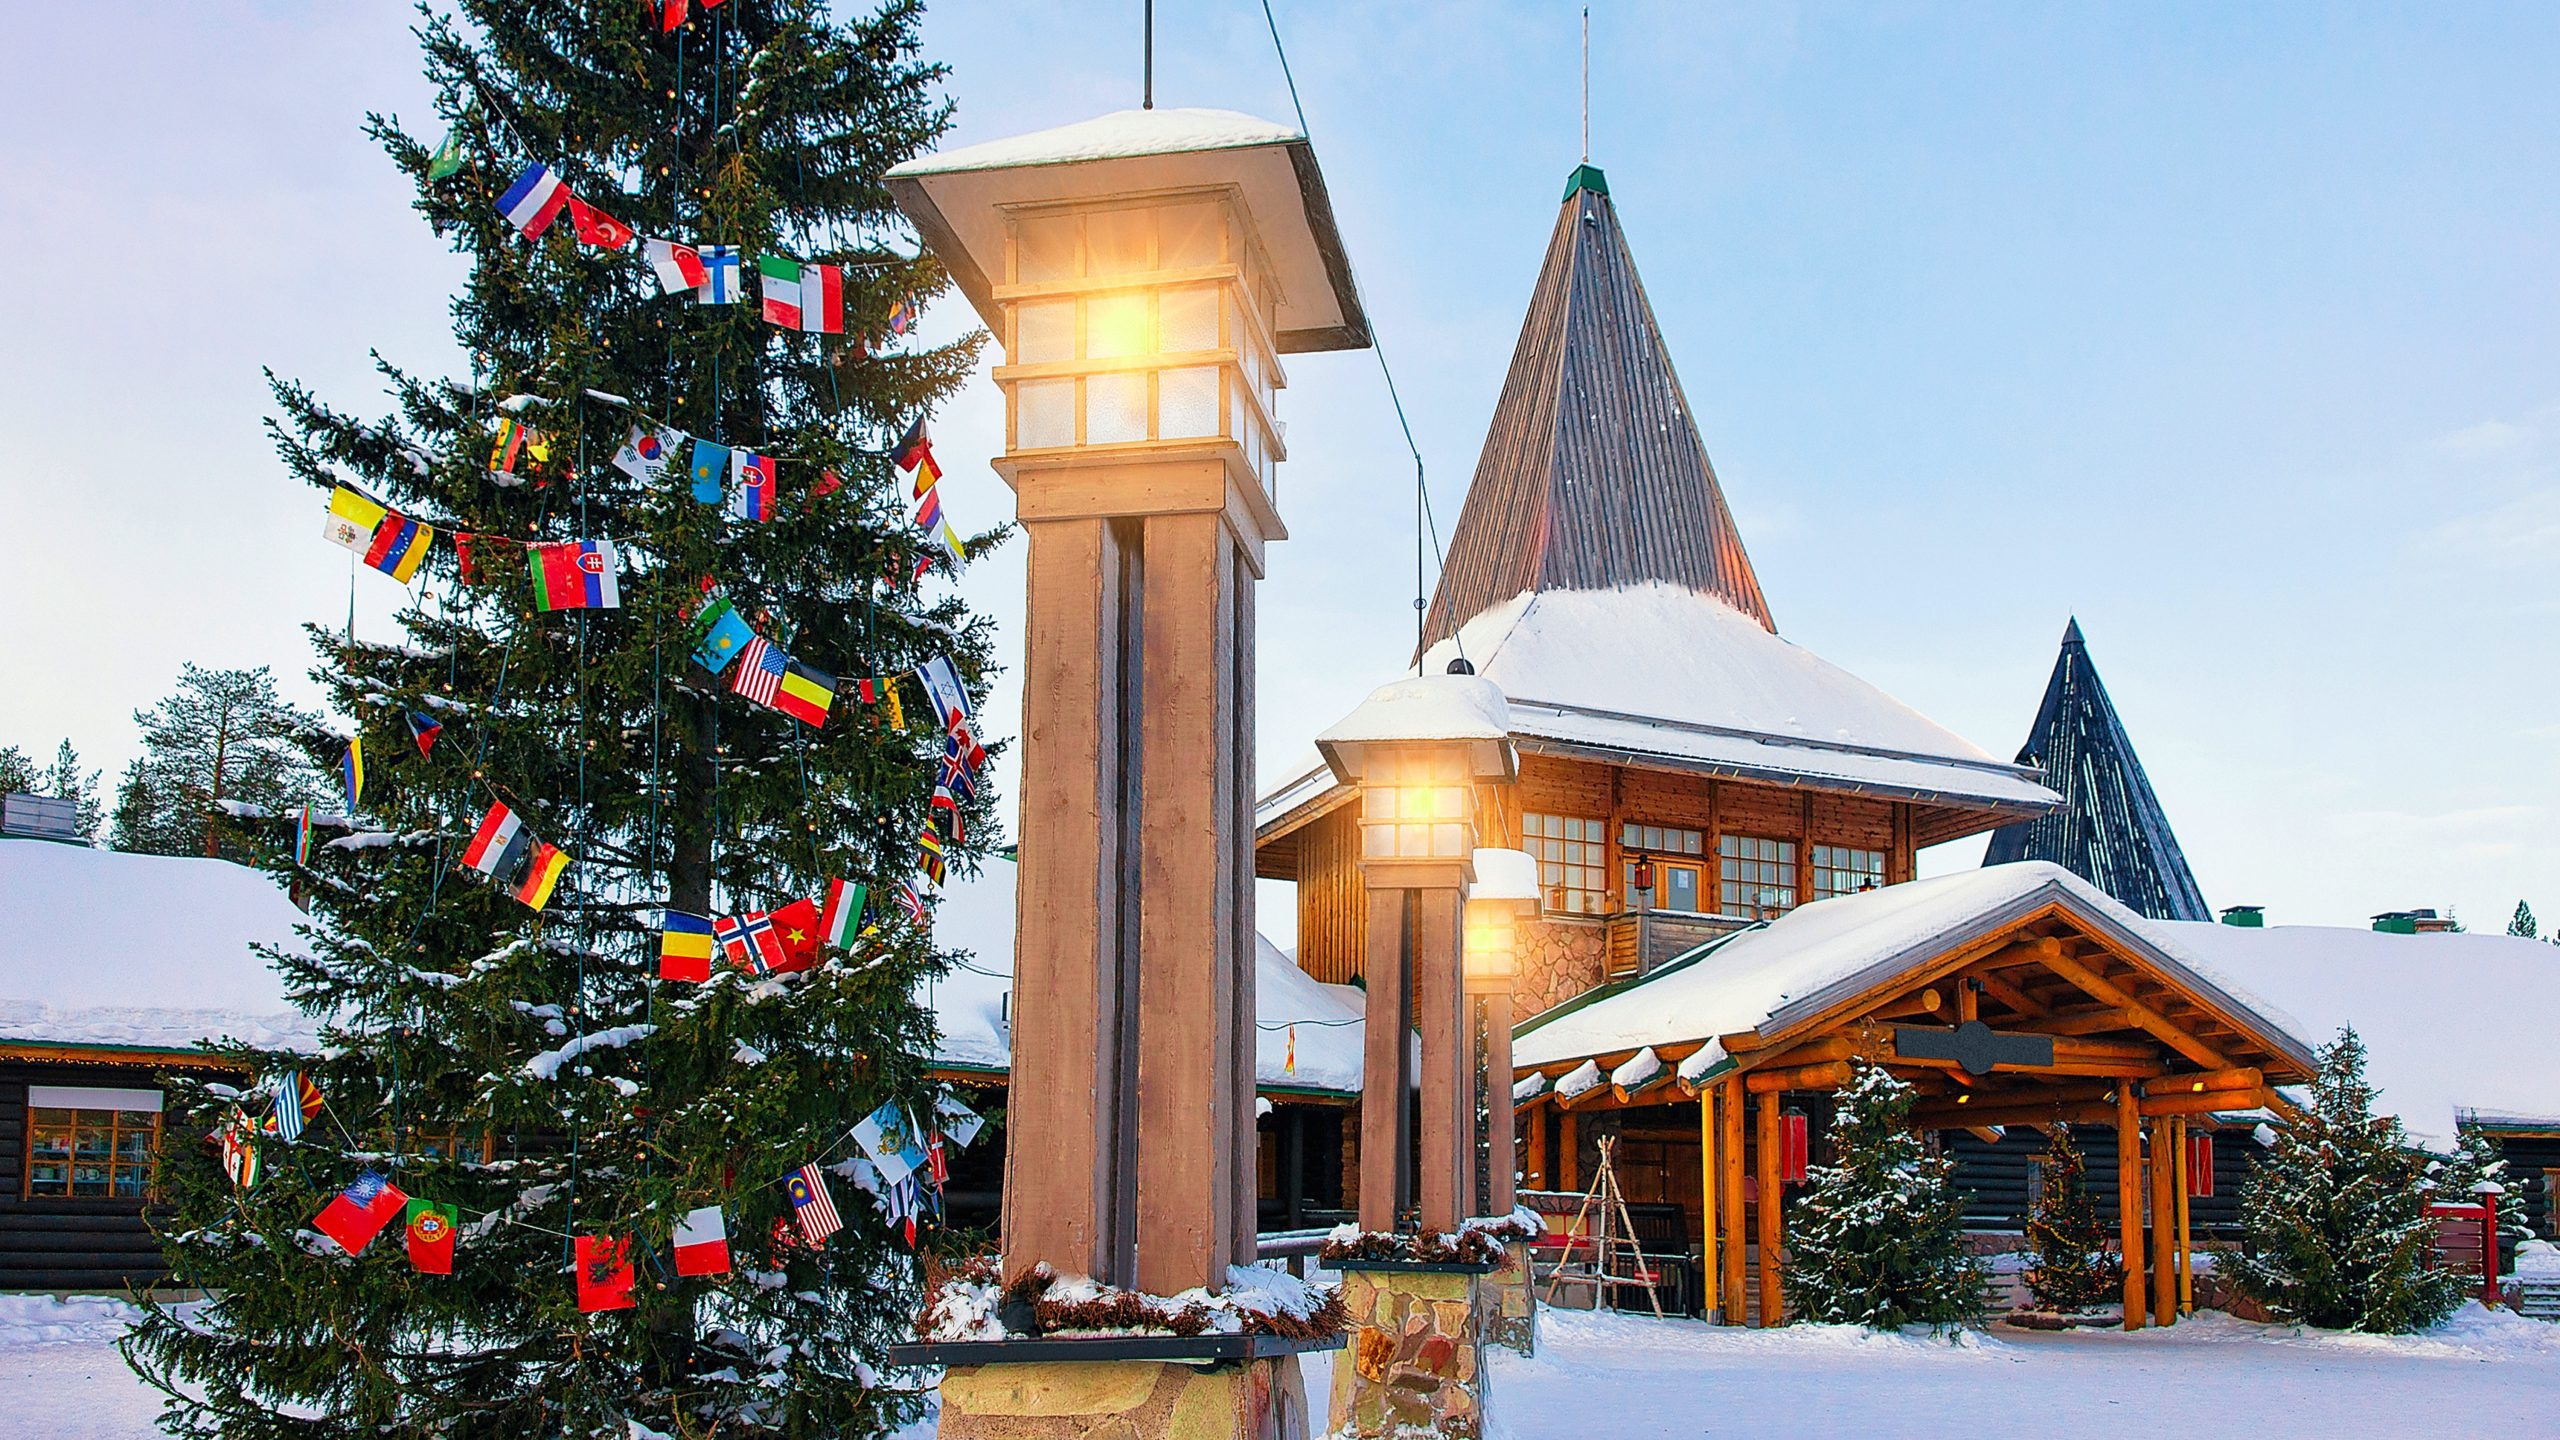 Finland Bus Charter in winter trip - Visit Santa Claus Village in Rovaniemi